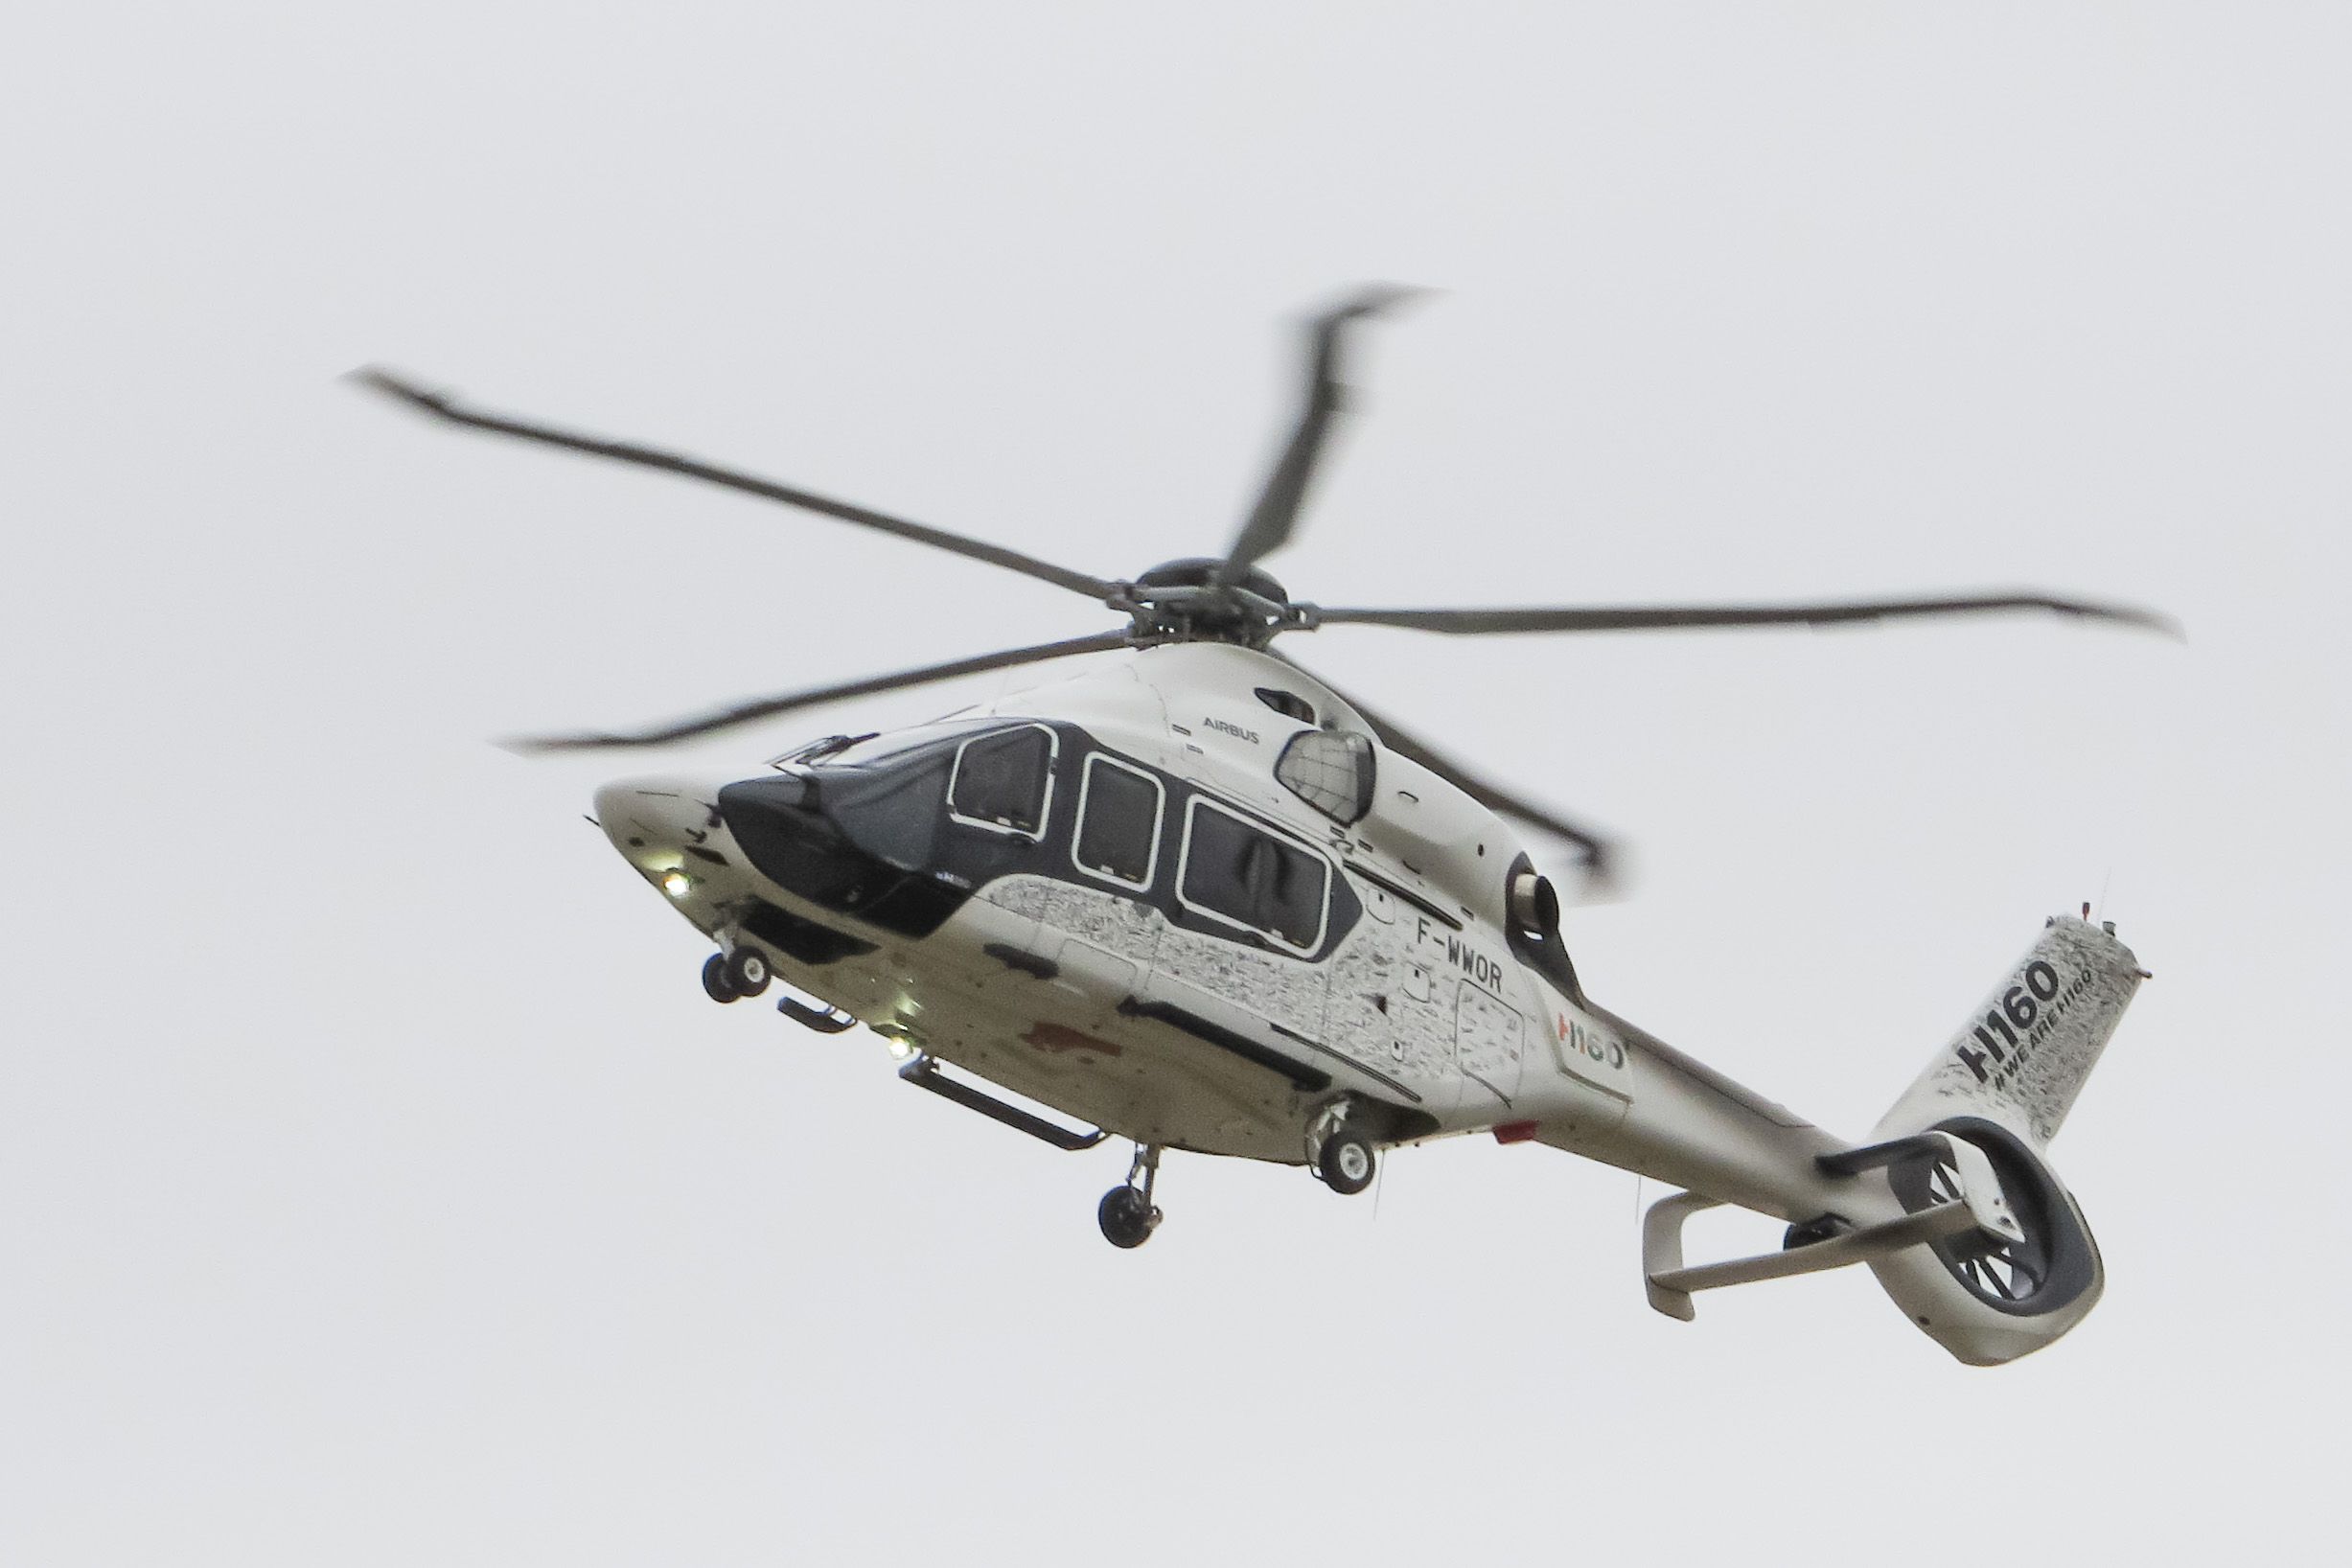     Le nouvel hélicoptère des Douanes doit arriver en novembre aux Antilles

